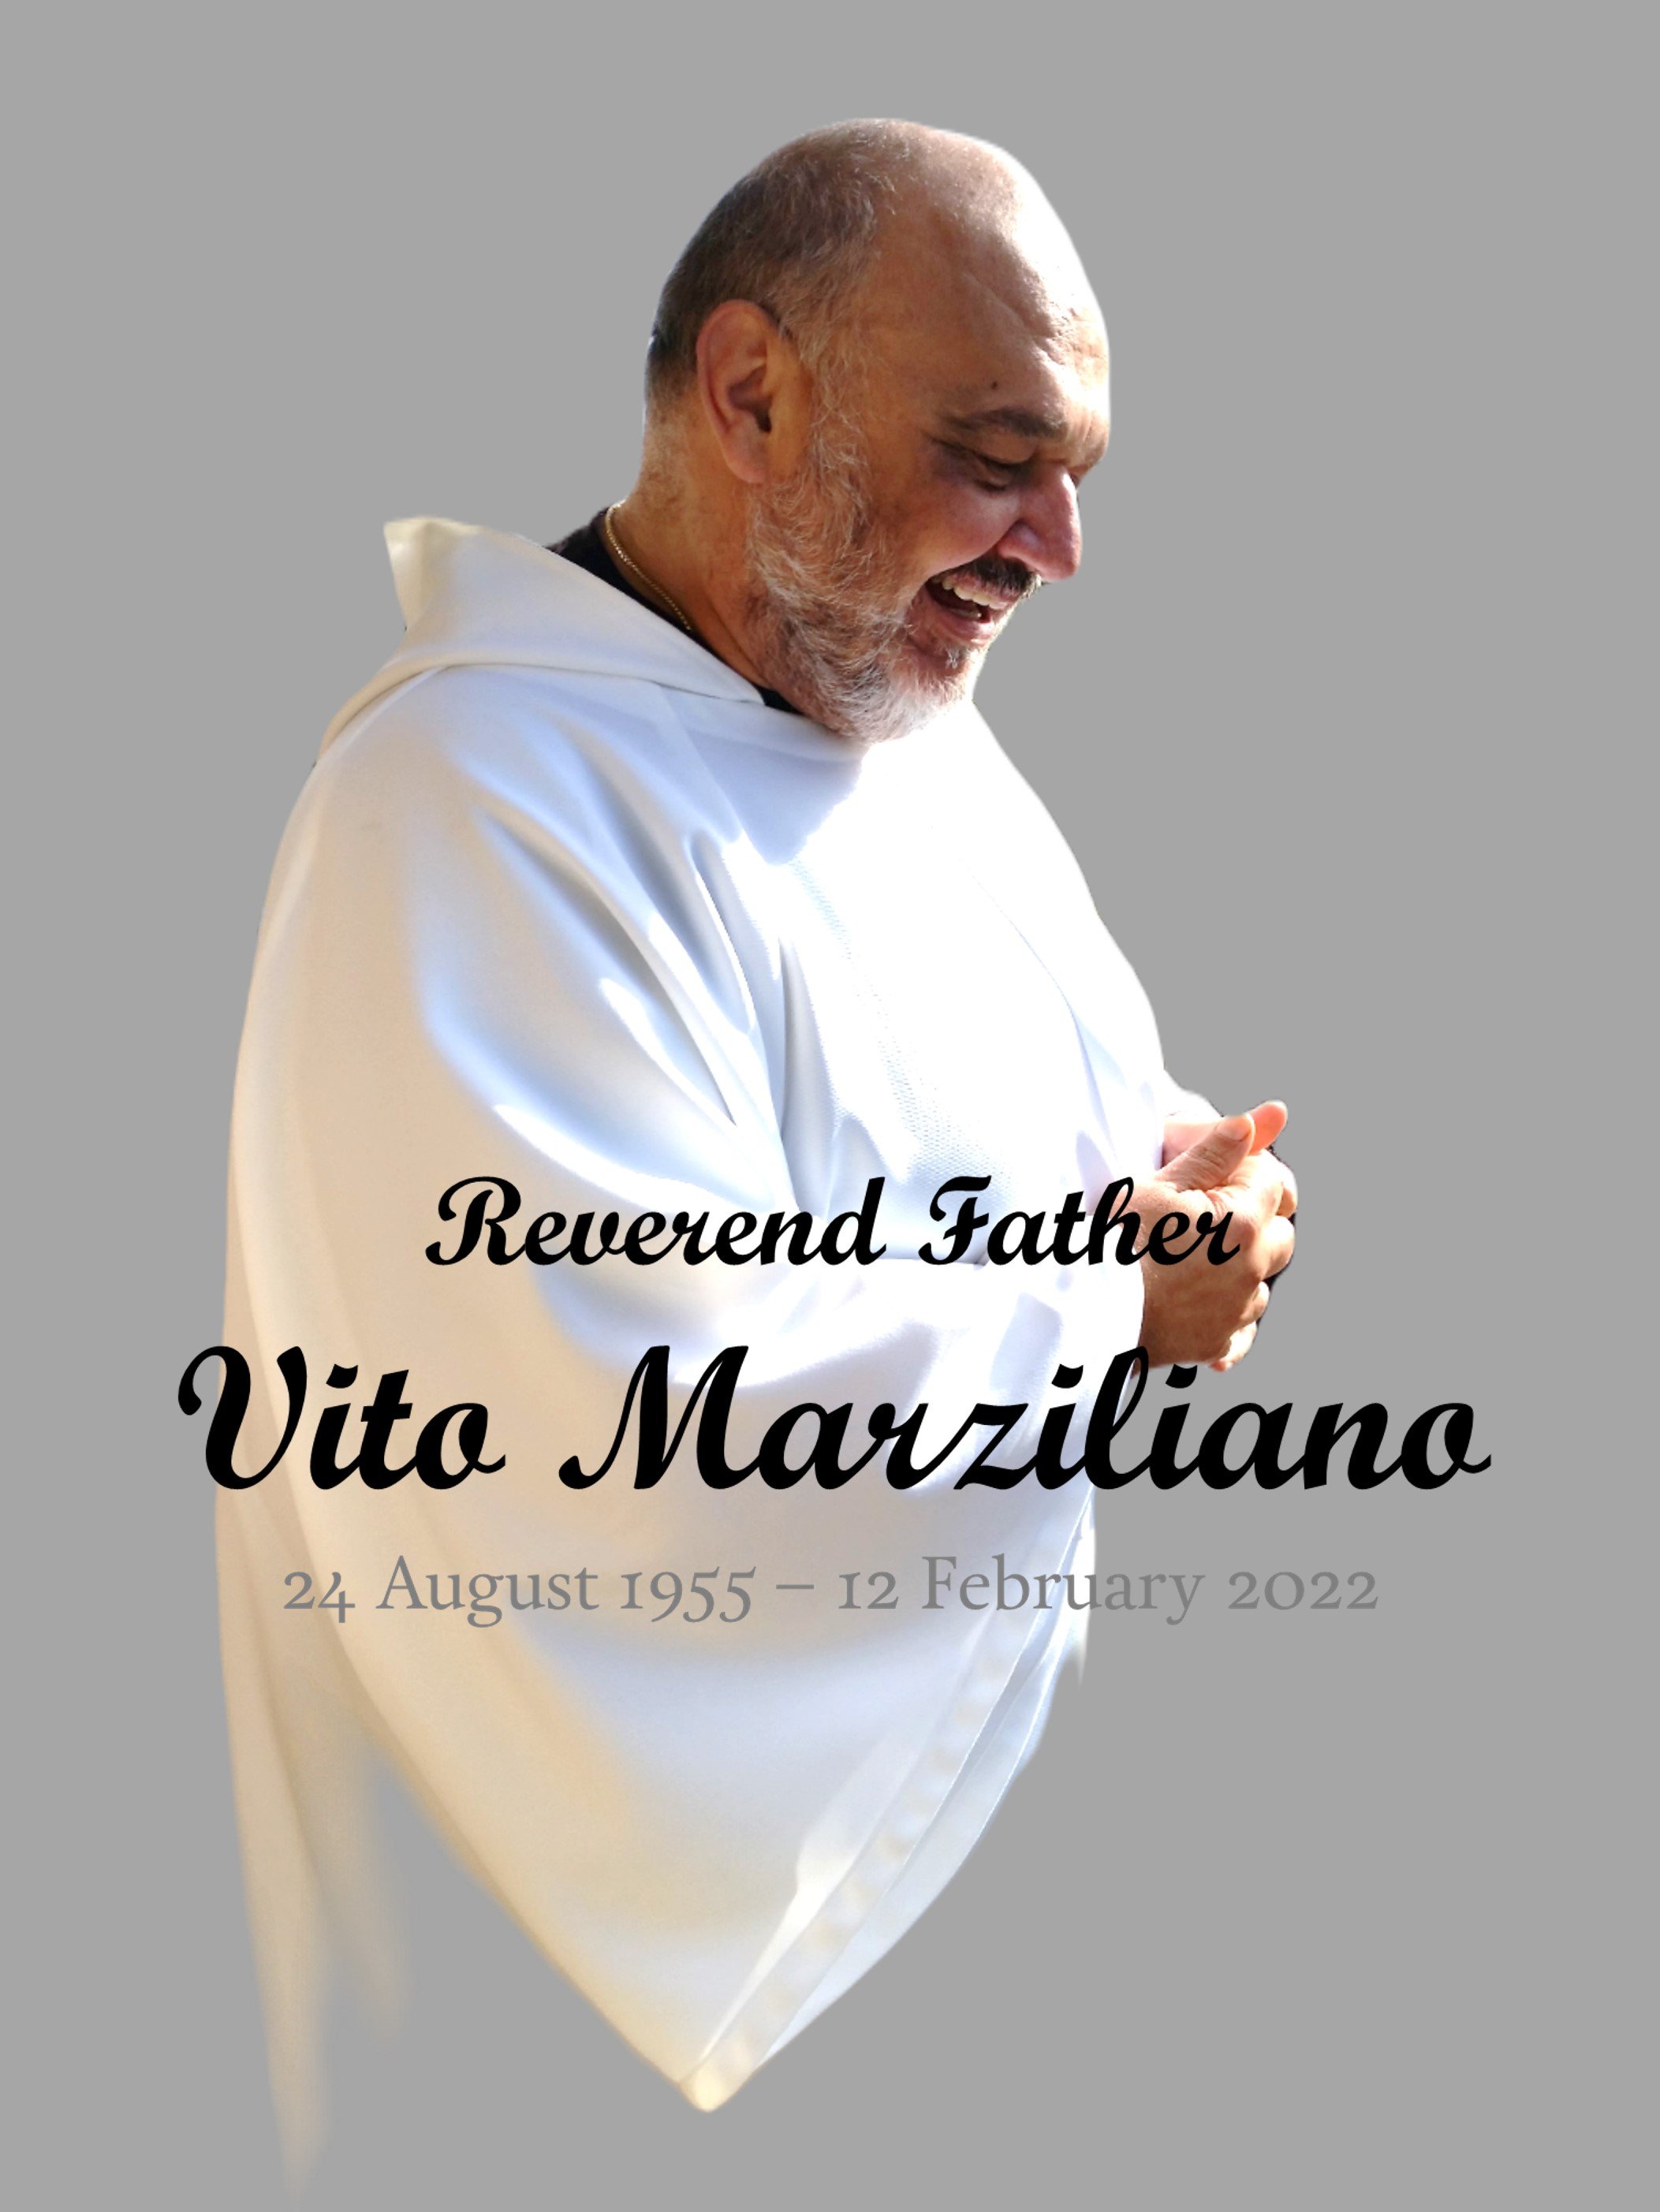 Fr Vito, RIP